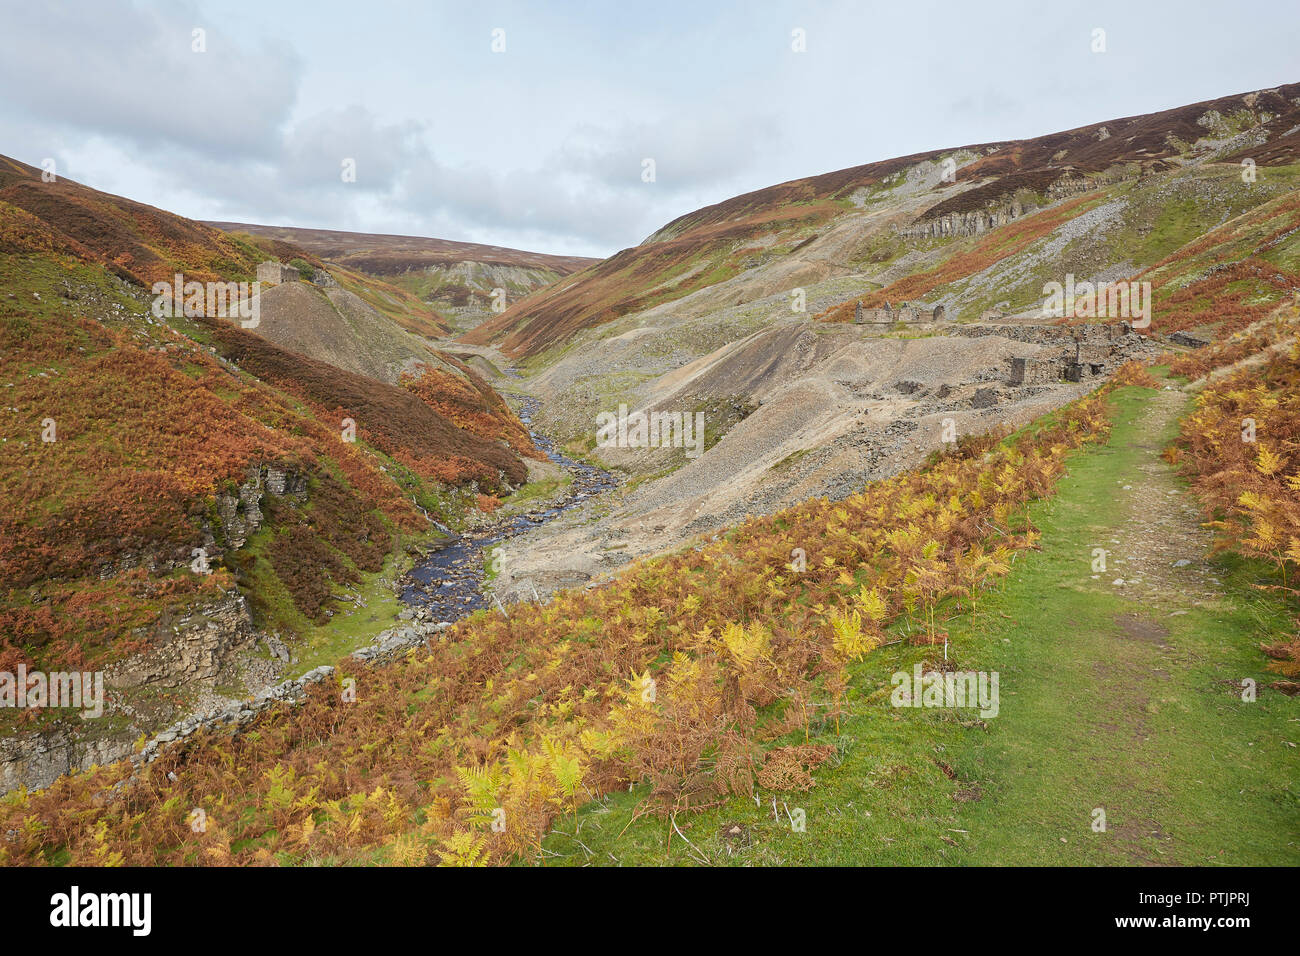 Restos de la otrora floreciente industria minera de plomo, parte de la mina, Bunting superiores de Gunnerside Ghyll Gill, Swaledale, Valles de Yorkshire, Reino Unido Foto de stock